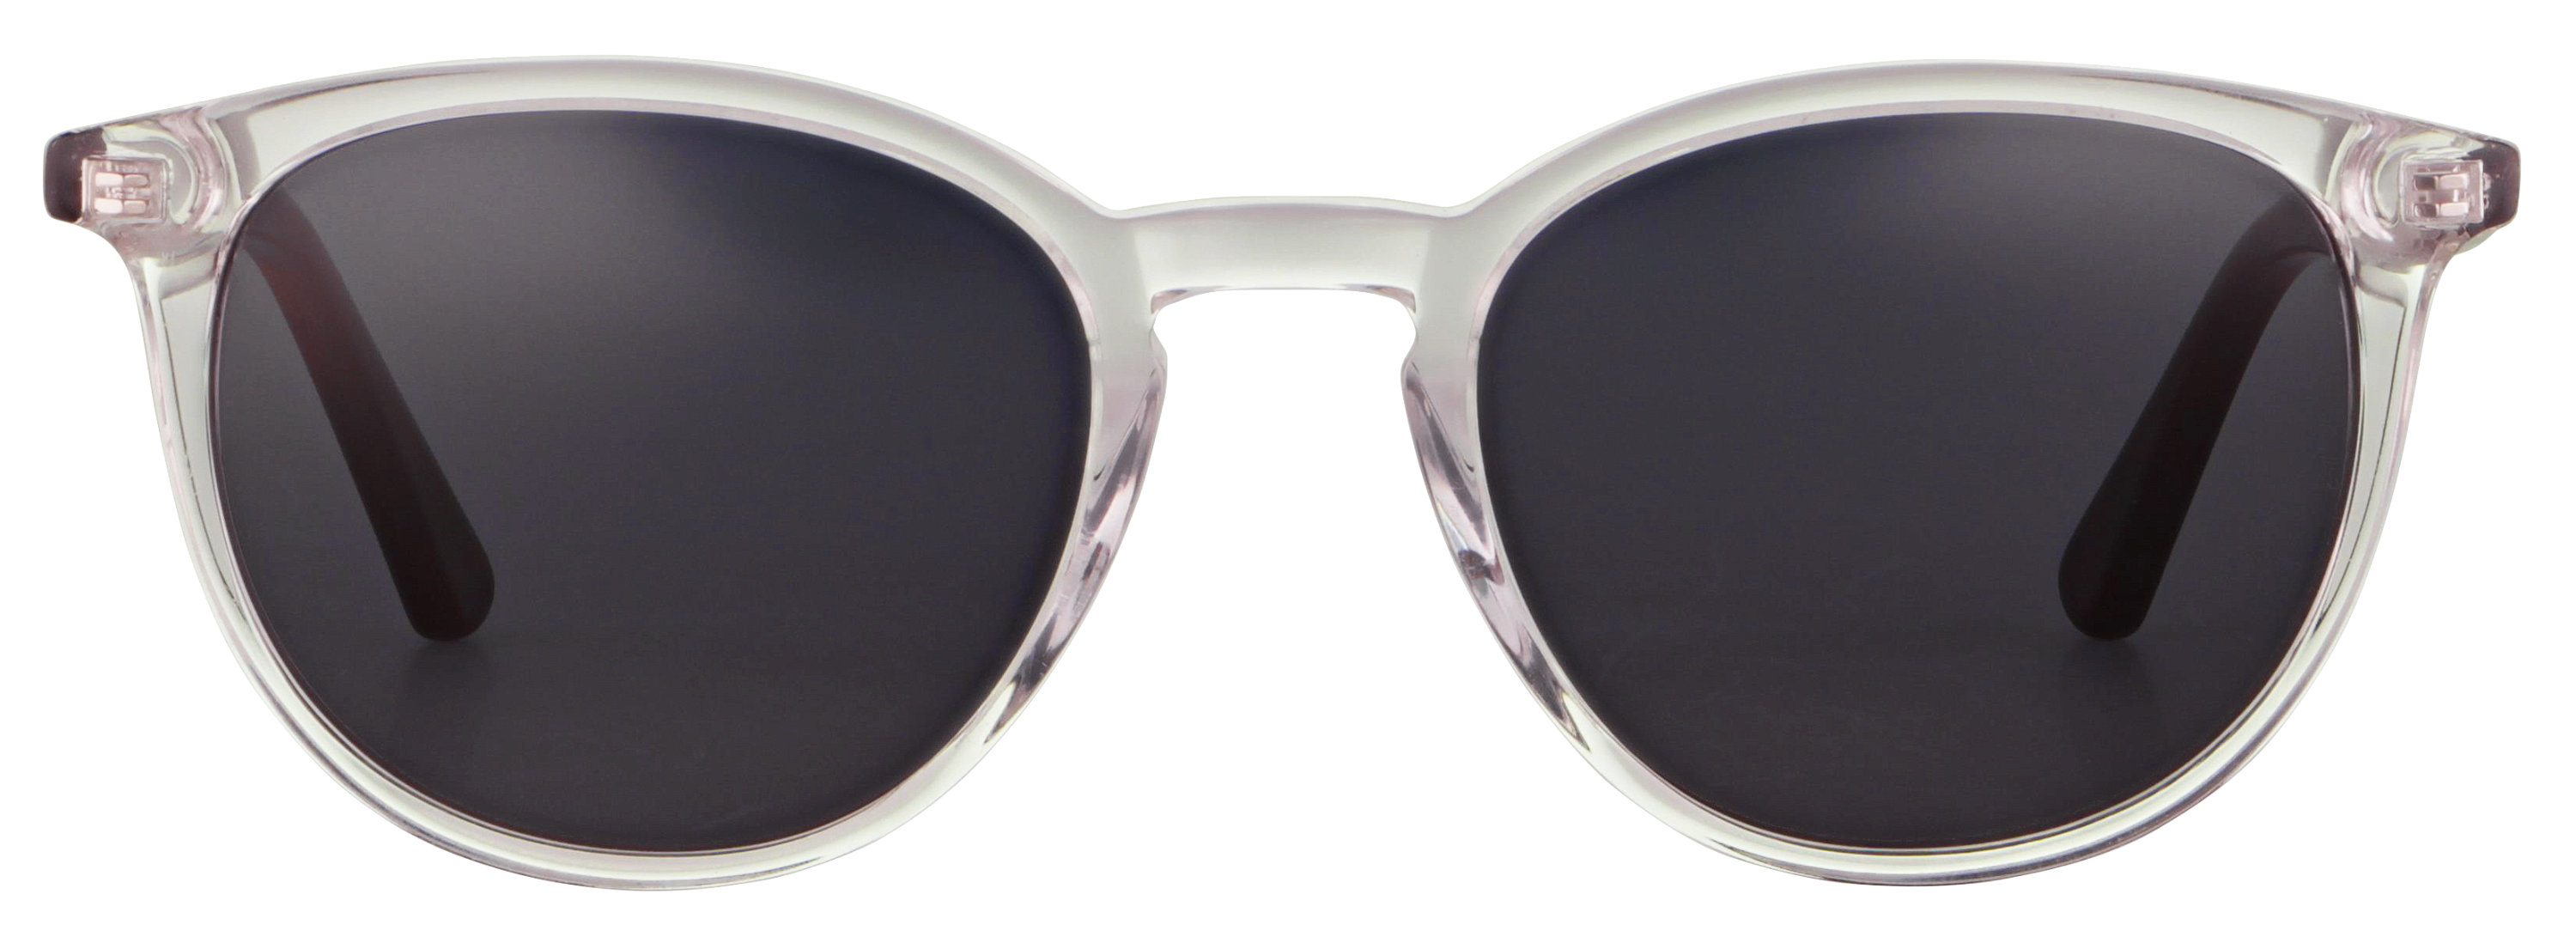 Das Bild zeigt die Sonnenbrille 718762 von der Marke Abele Optik in transparent.